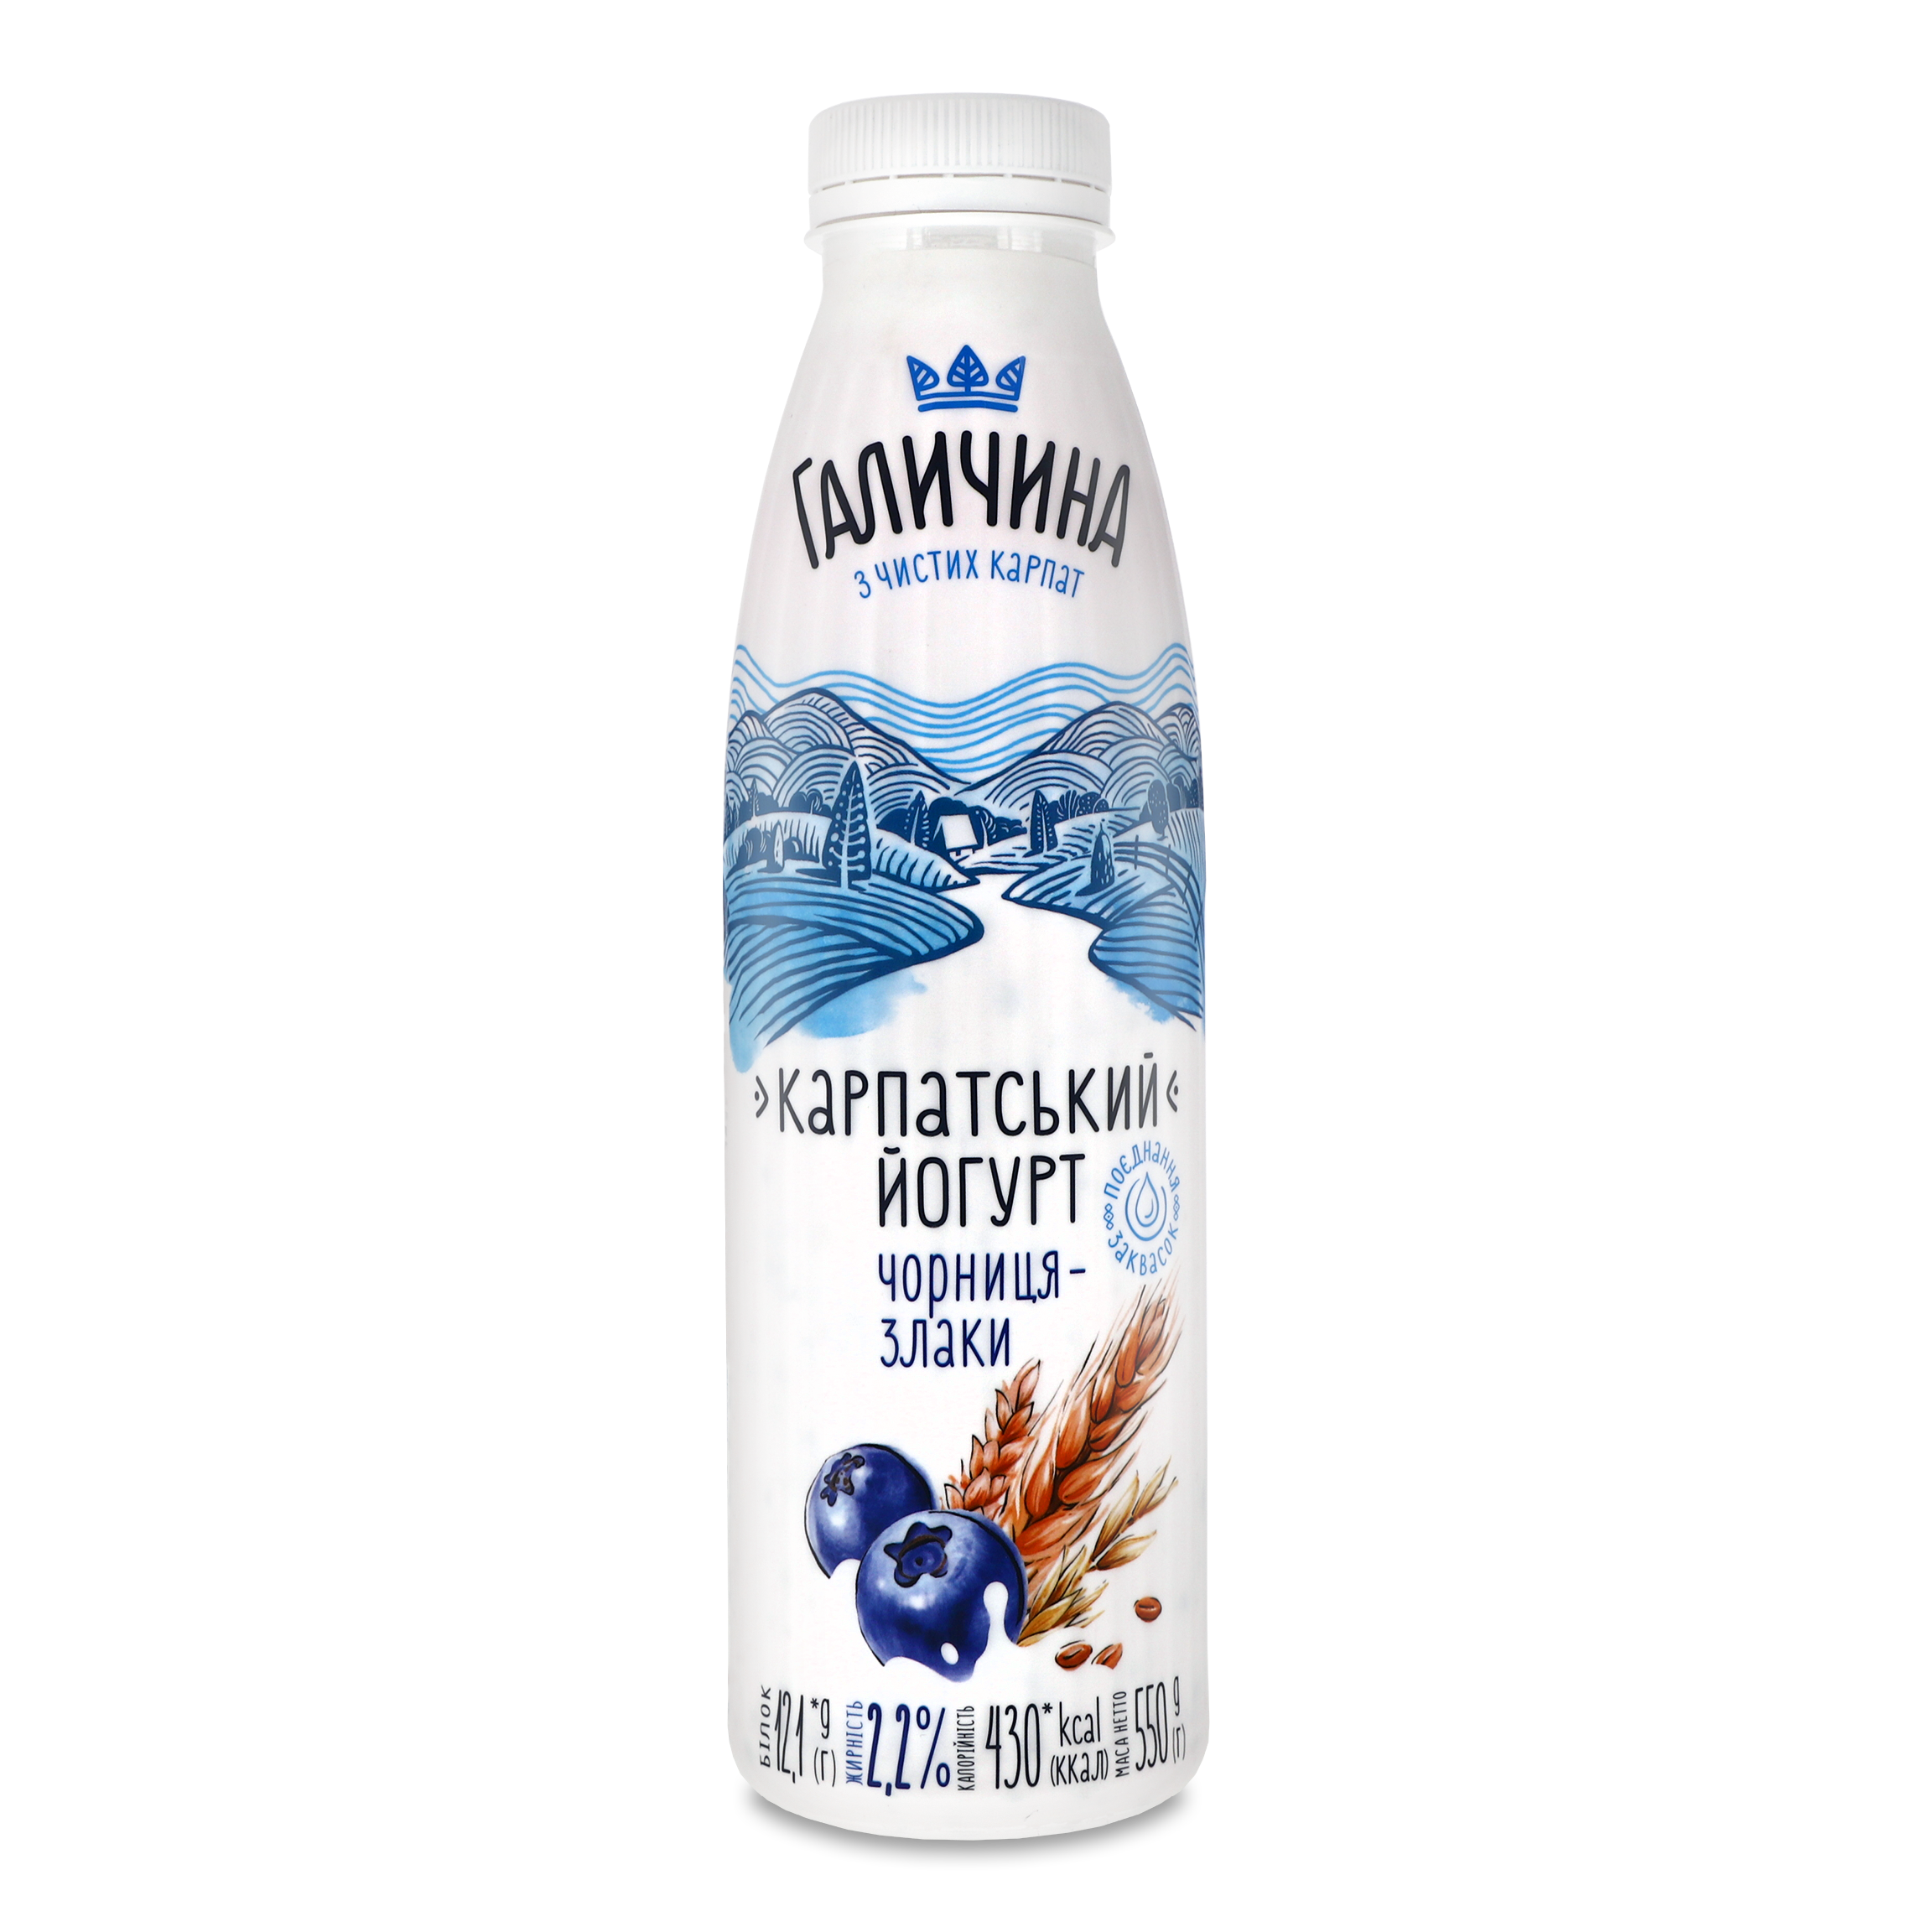 Galychyna Bilberry-Cereals Flavored Yogurt 002,2 550g